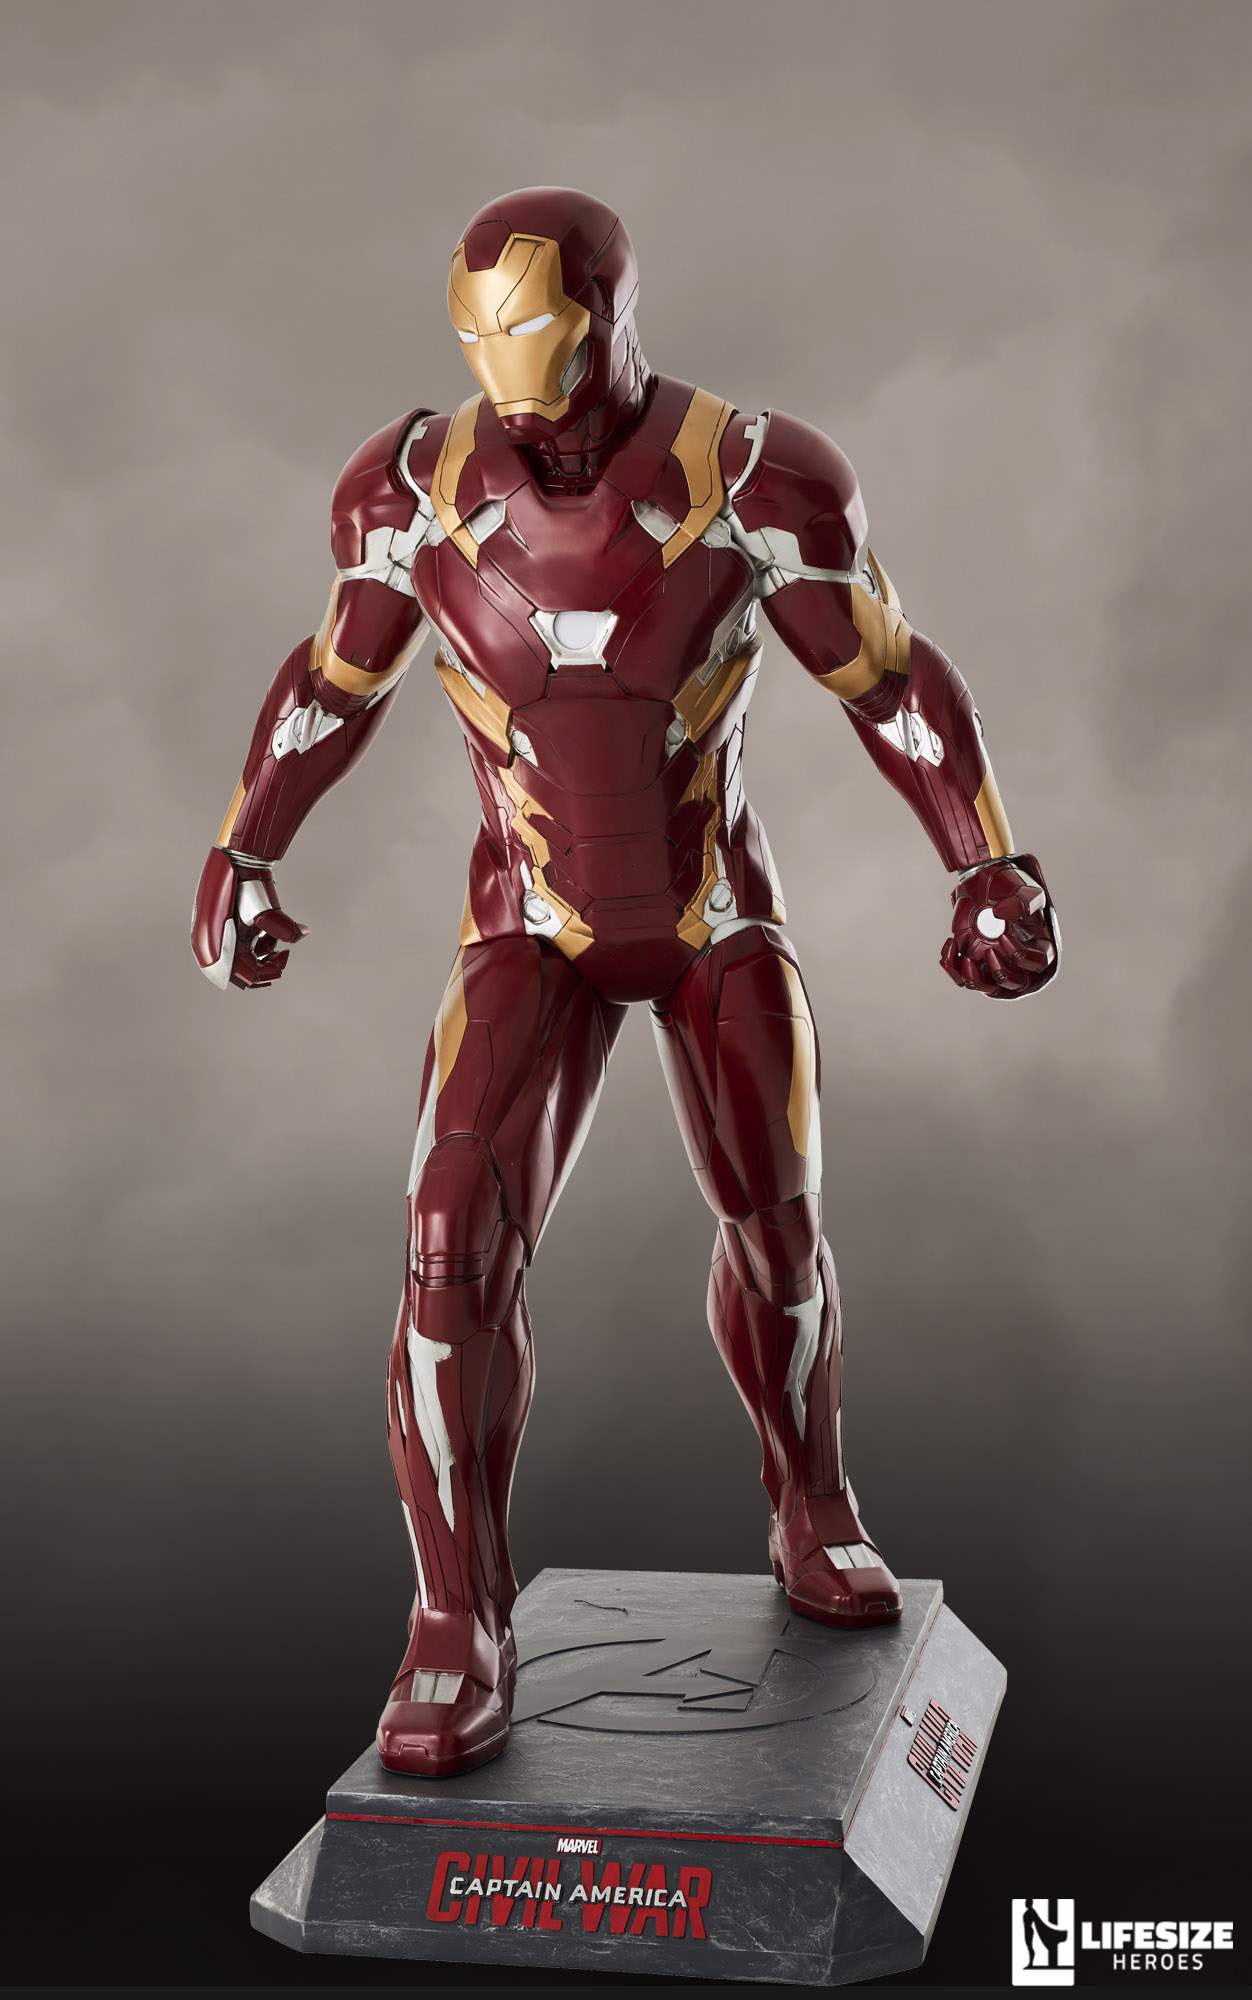 Iron Man Avengers Endgame - lebensgroße Statue 1:1 Figur